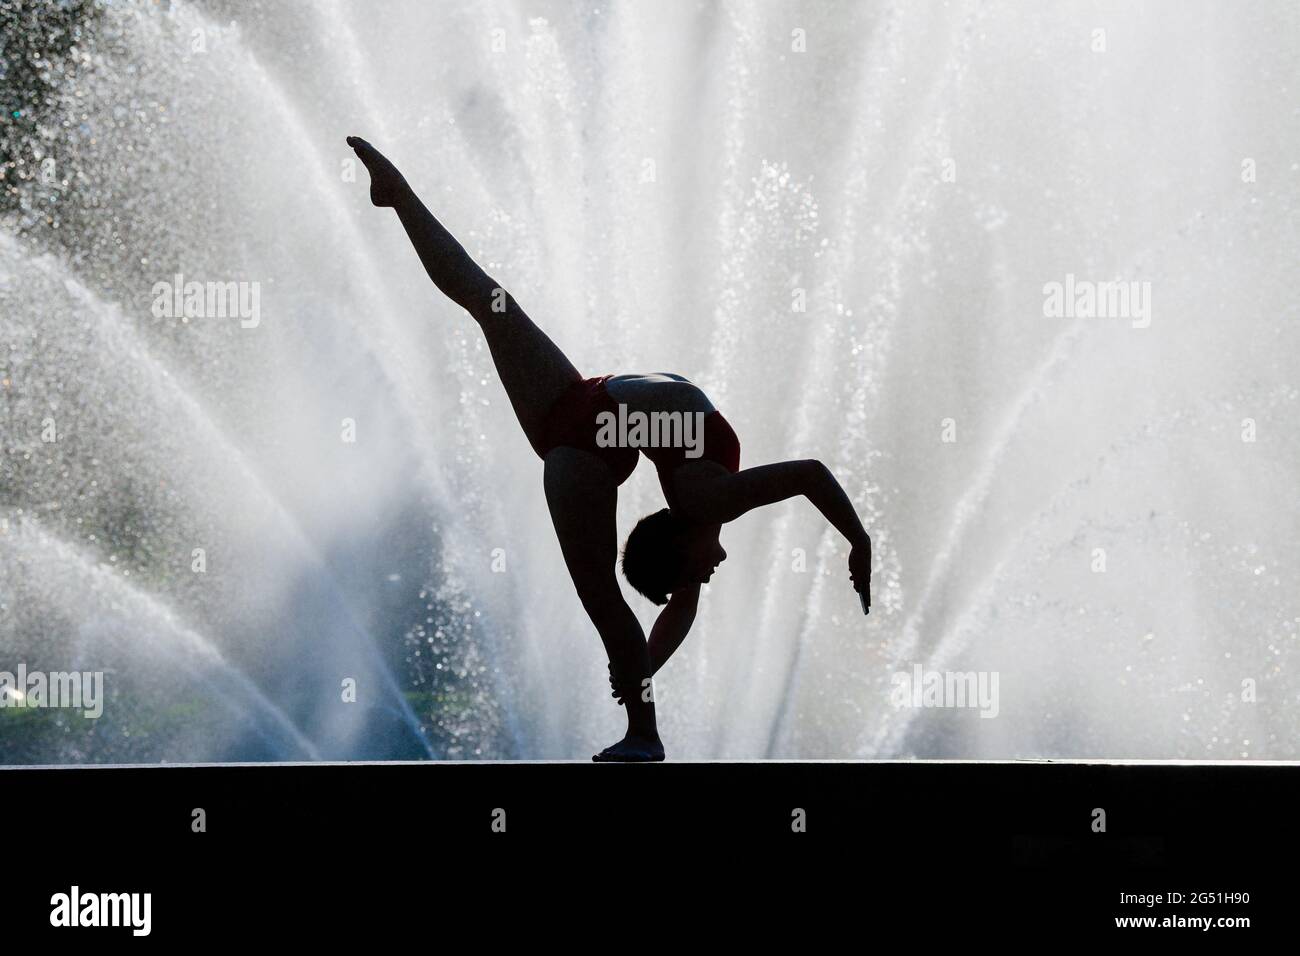 Femme faisant une posture acrobatique contre la fontaine Banque D'Images